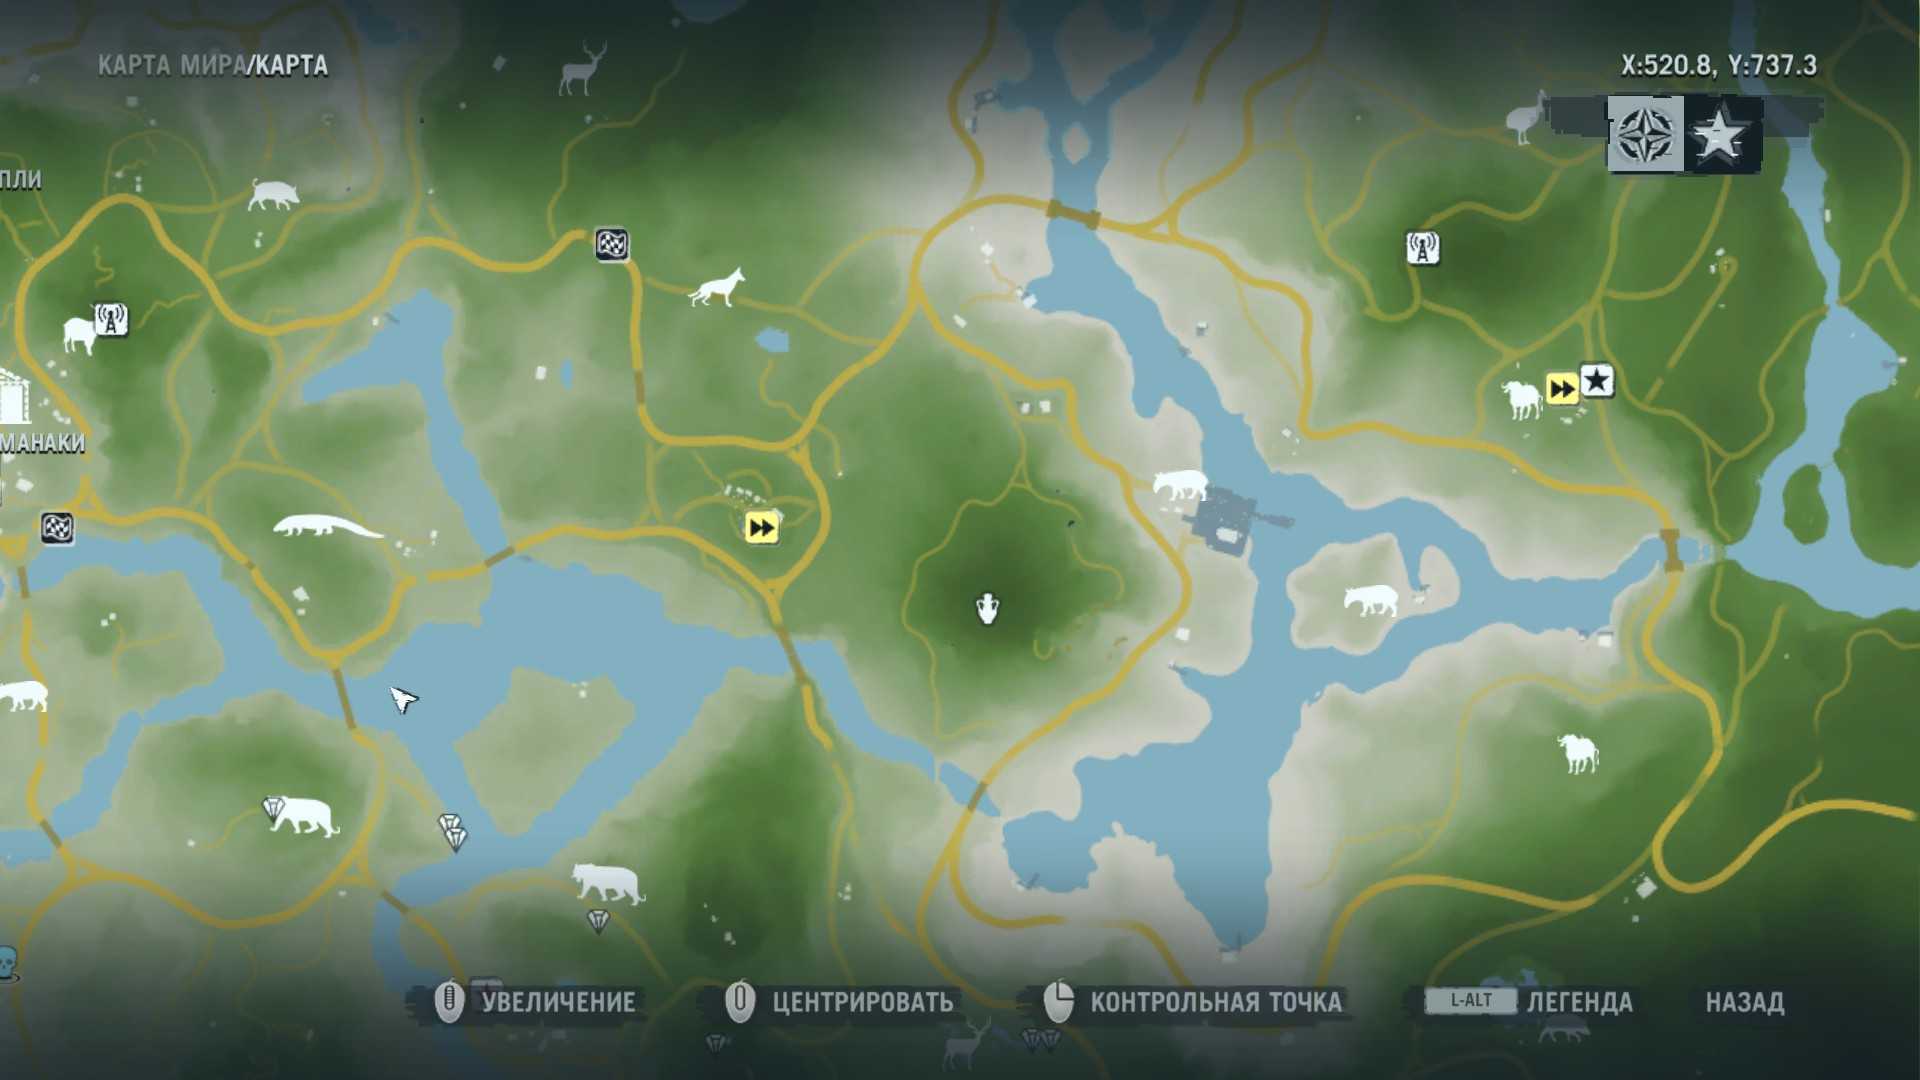 Гайд по прохождению far cry 3 полностью: сколько времени займут сюжет и миссии